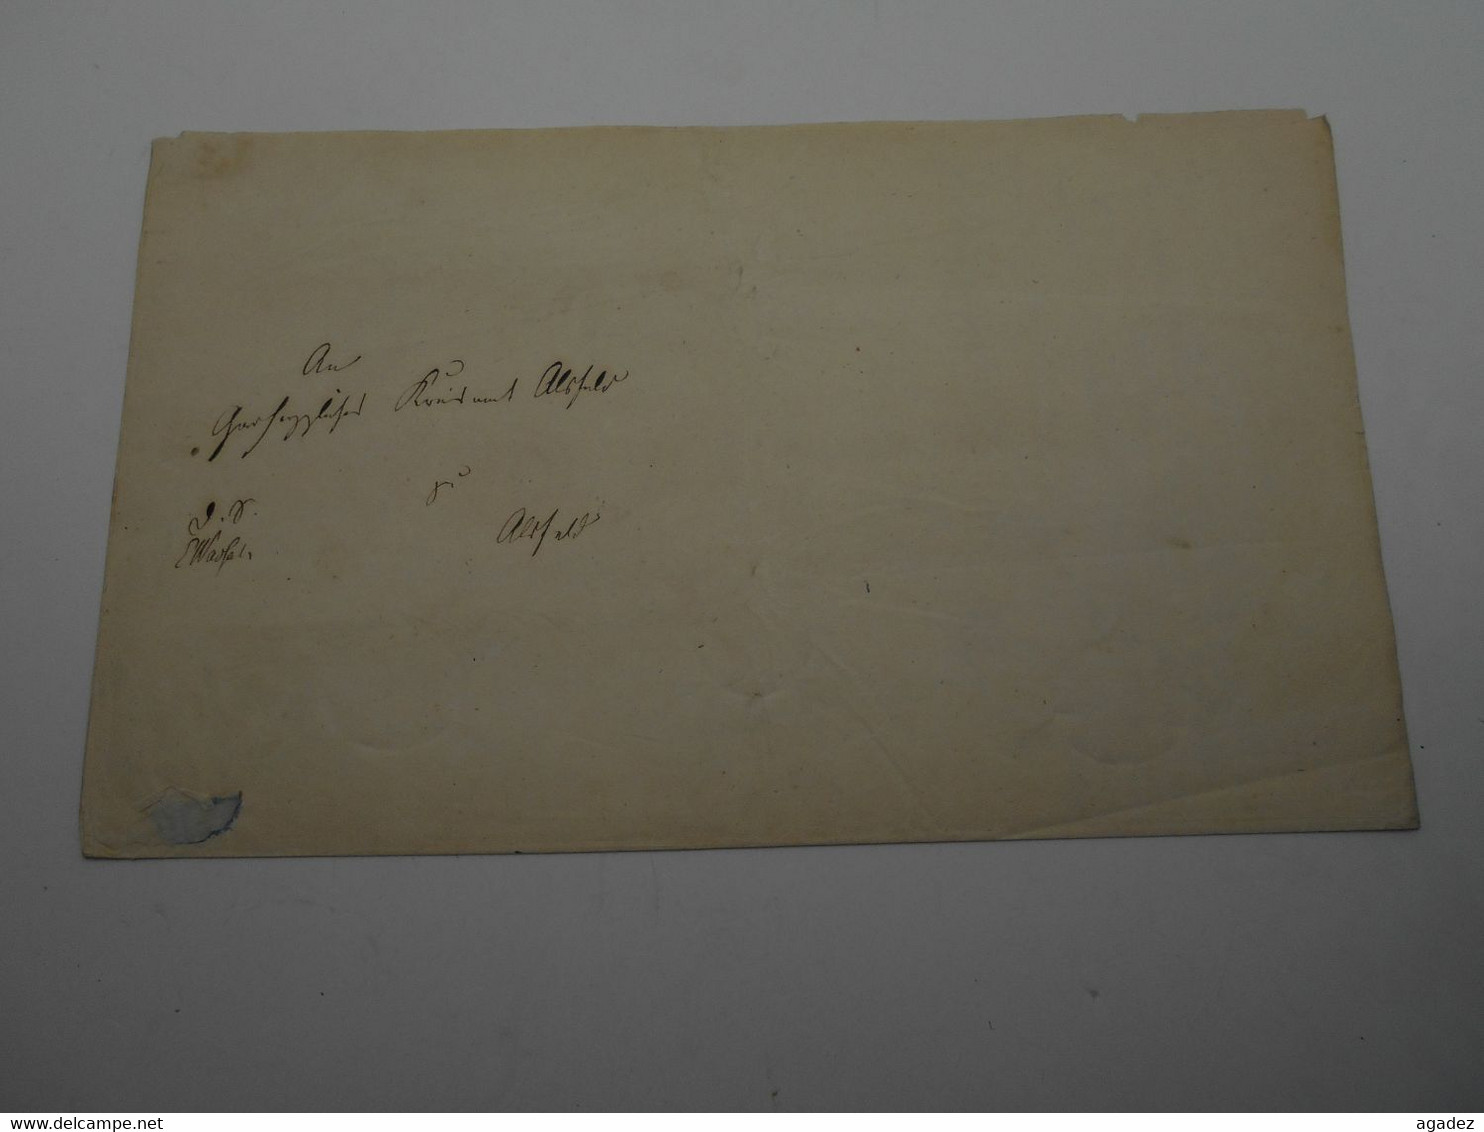 Ancienne Lettre Allemande  1854 Grebenau Alter Deutscher Brief - 1800 – 1899